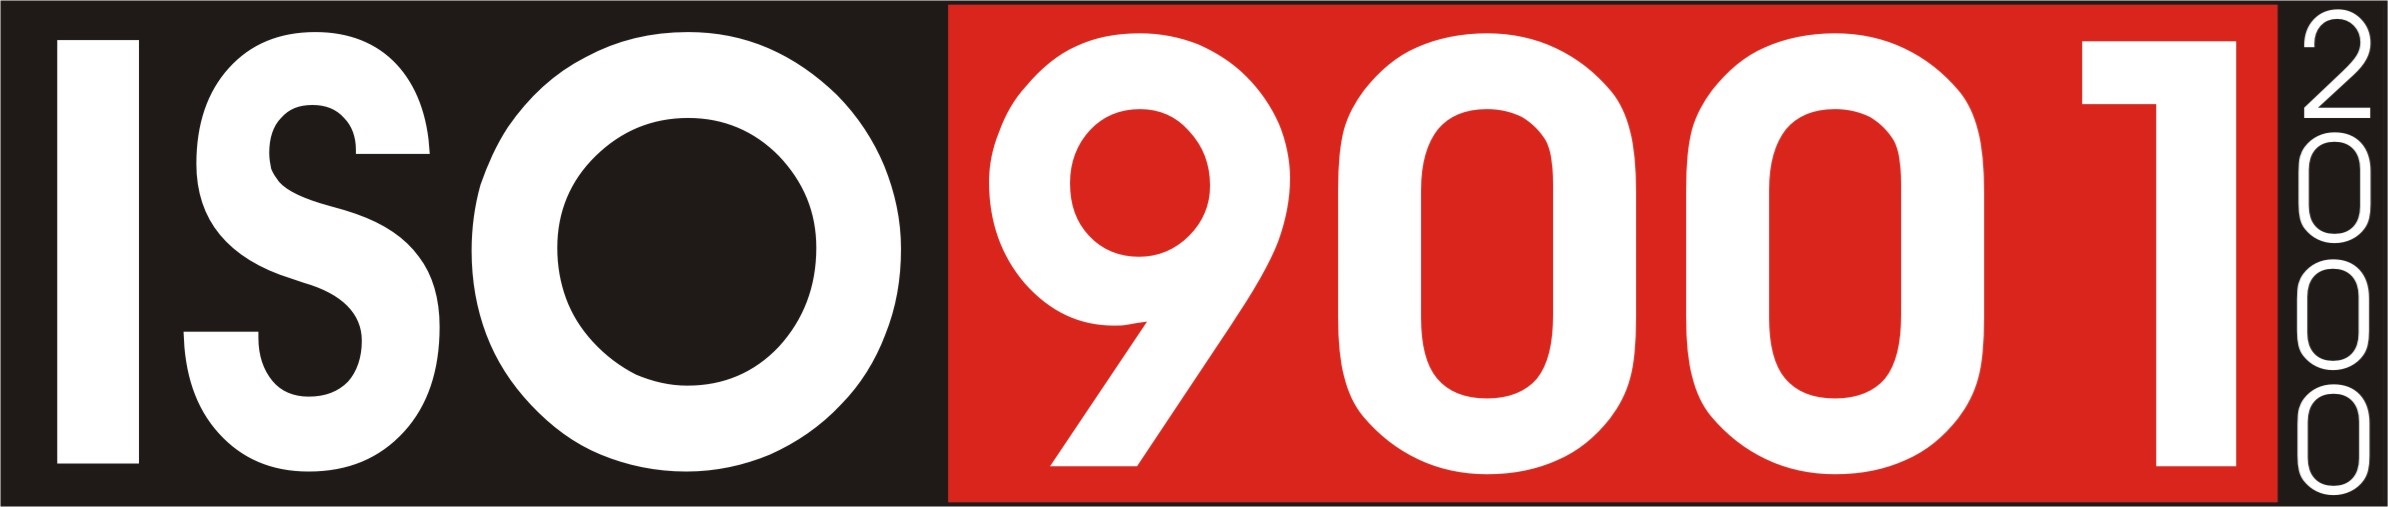 Selo de qualidade ISO 9001:2000